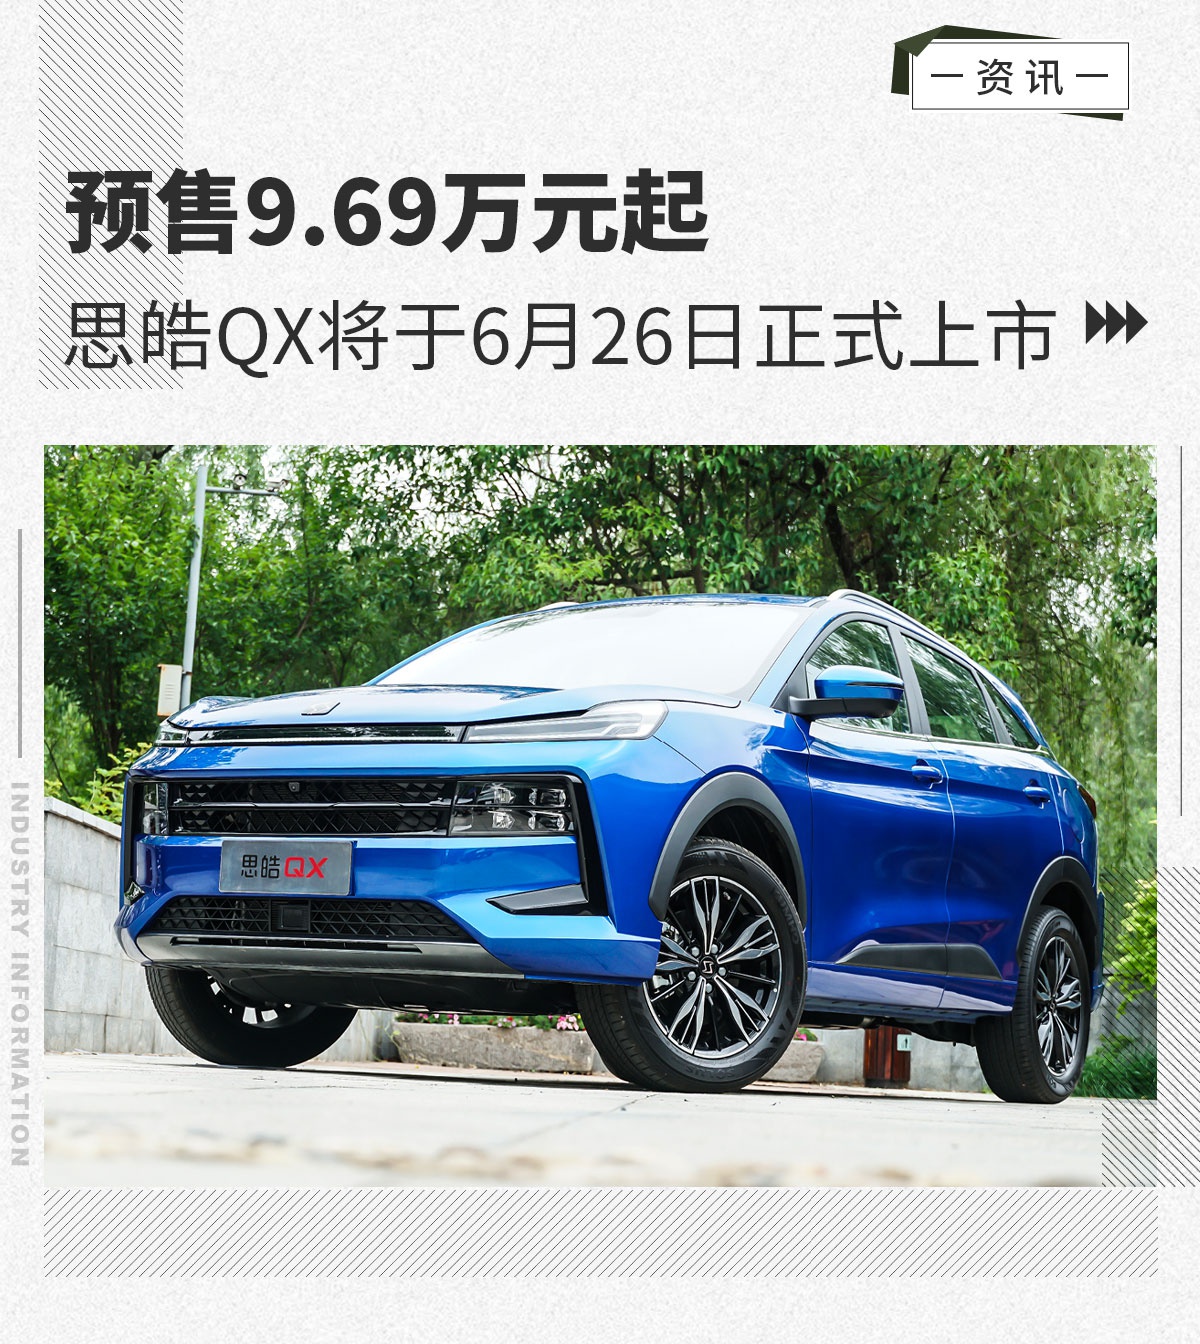 预售9.69万元起 思皓QX将于6月26日上市